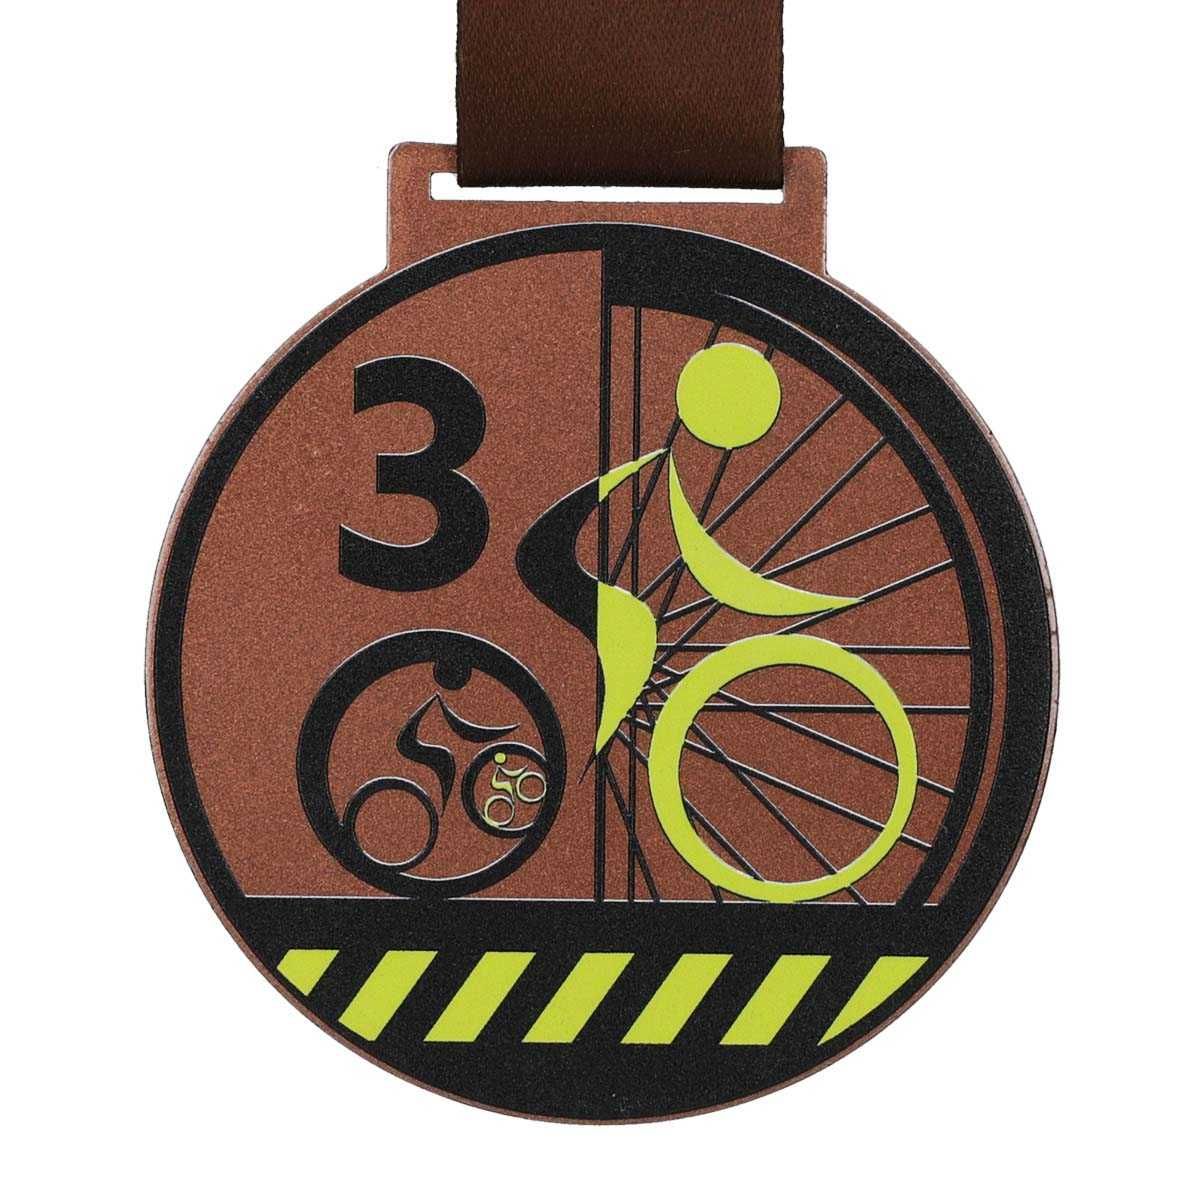 Medale dla rowerzysty z drukiem UV za 1, 2 i 3 miejsce